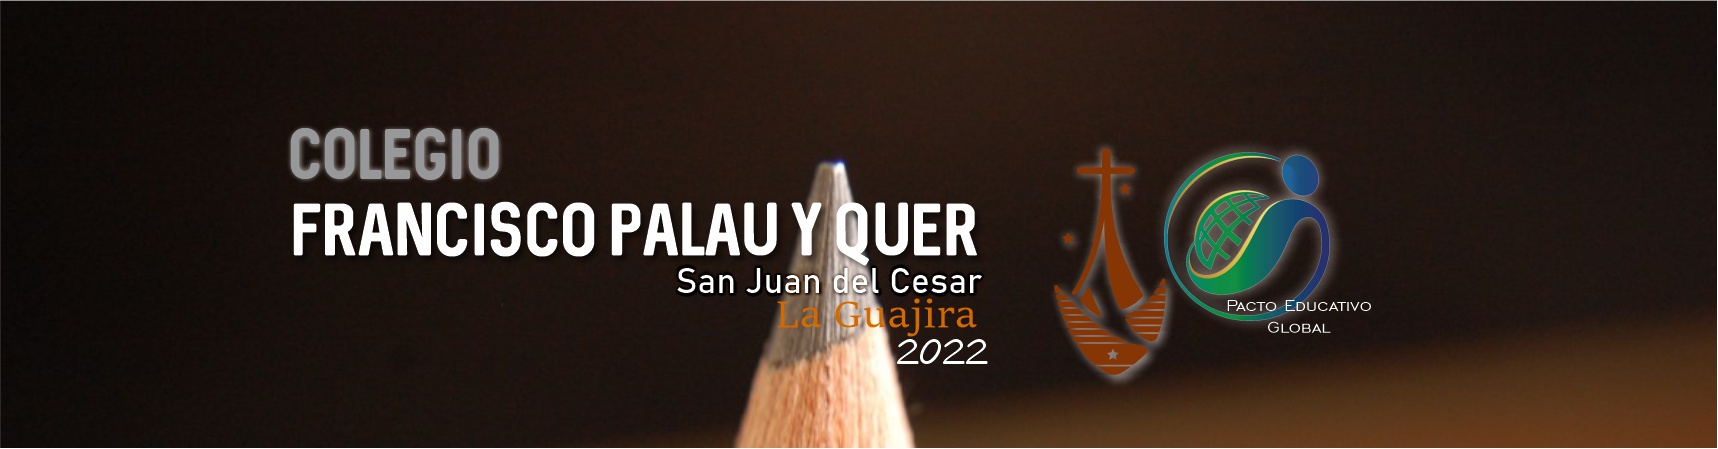 Colegio Francisco Palau y Quer – San Juan del Cesar